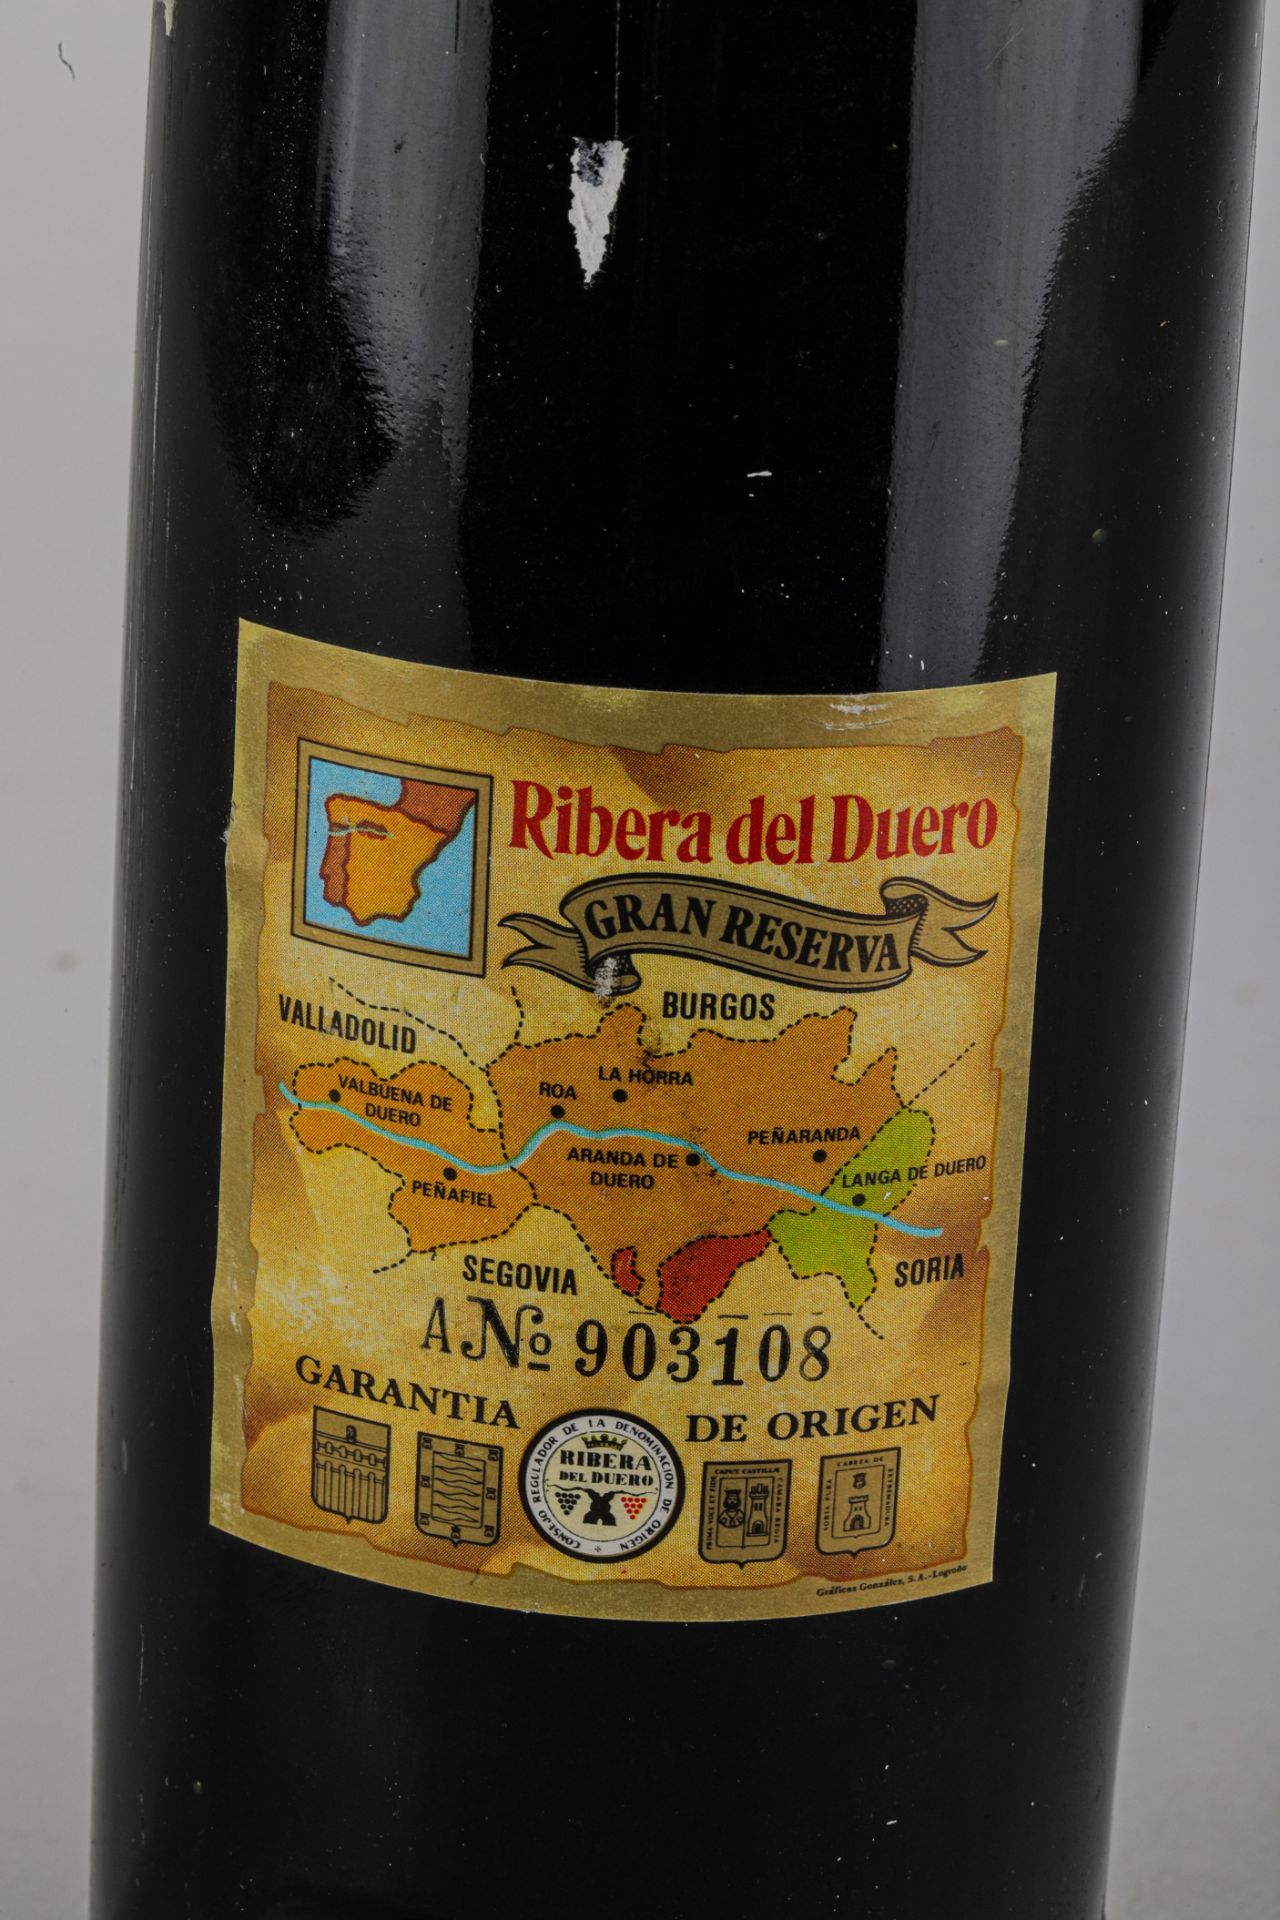 VEGA SICILIA UNICO. 1975.Ribera del Duero. Bouteille N°05422 sur production de 44 750 bouteilles. - Image 6 of 6